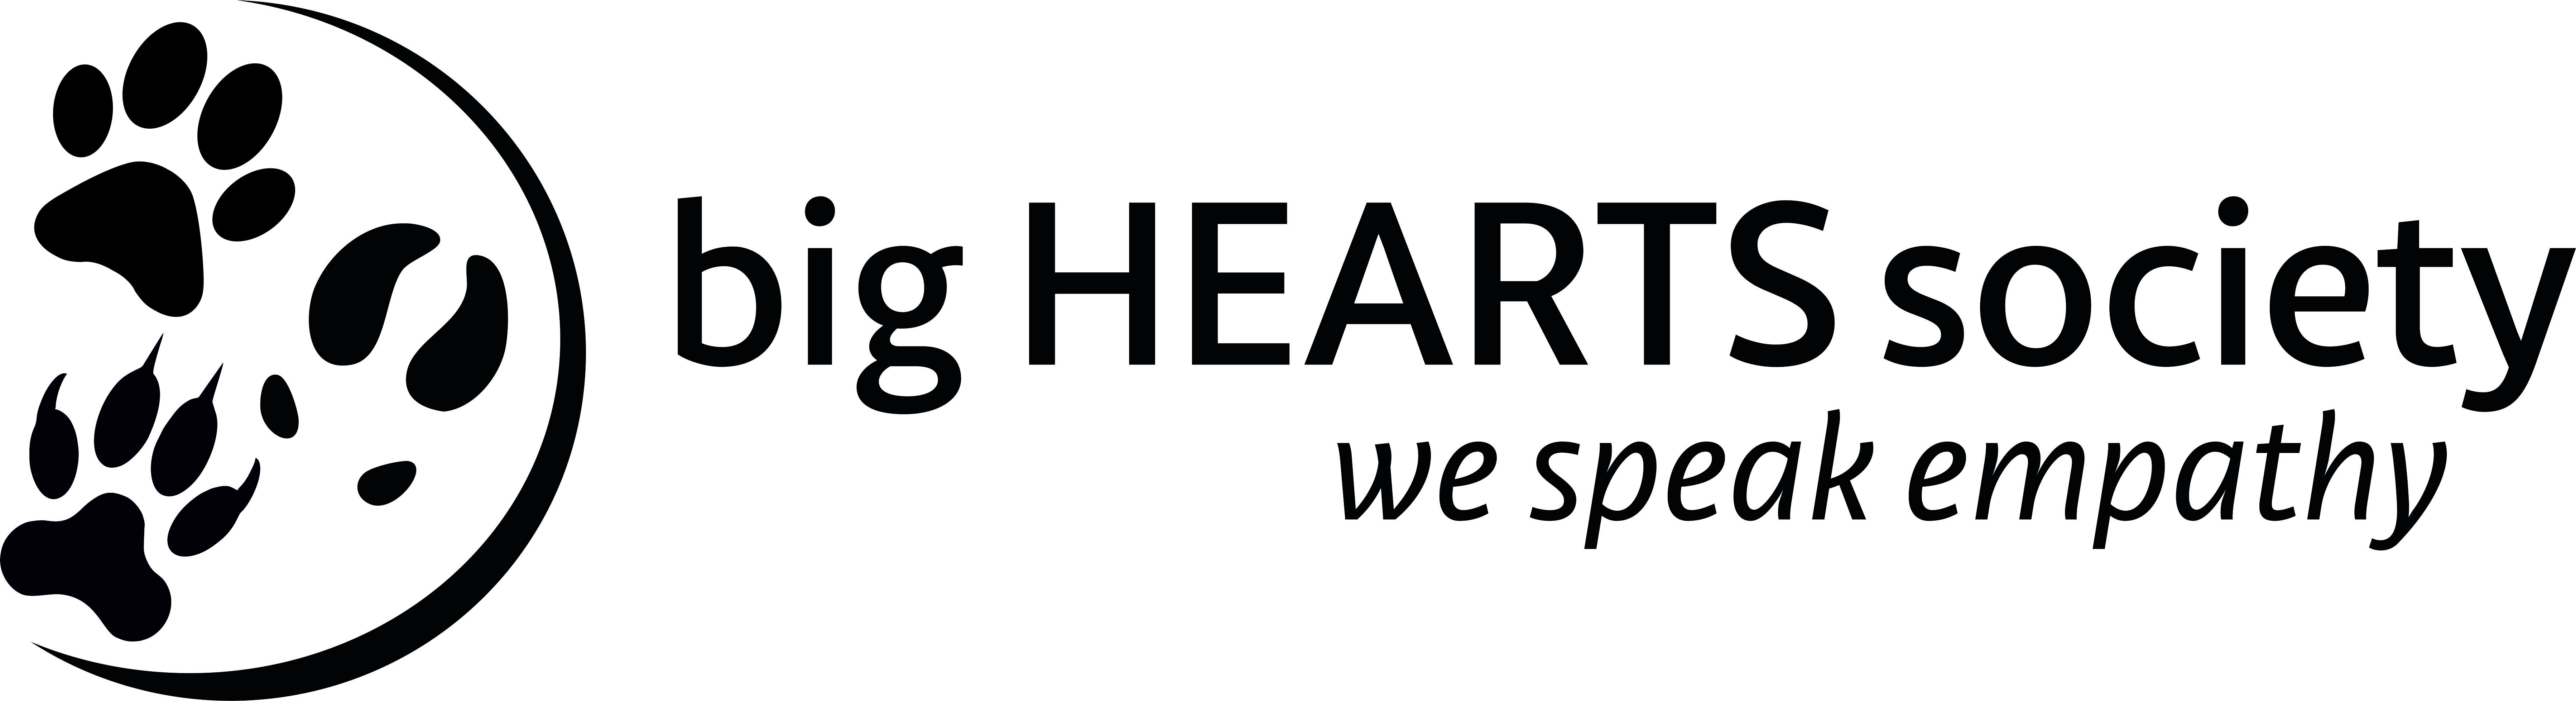 Big Hearts Society  logo